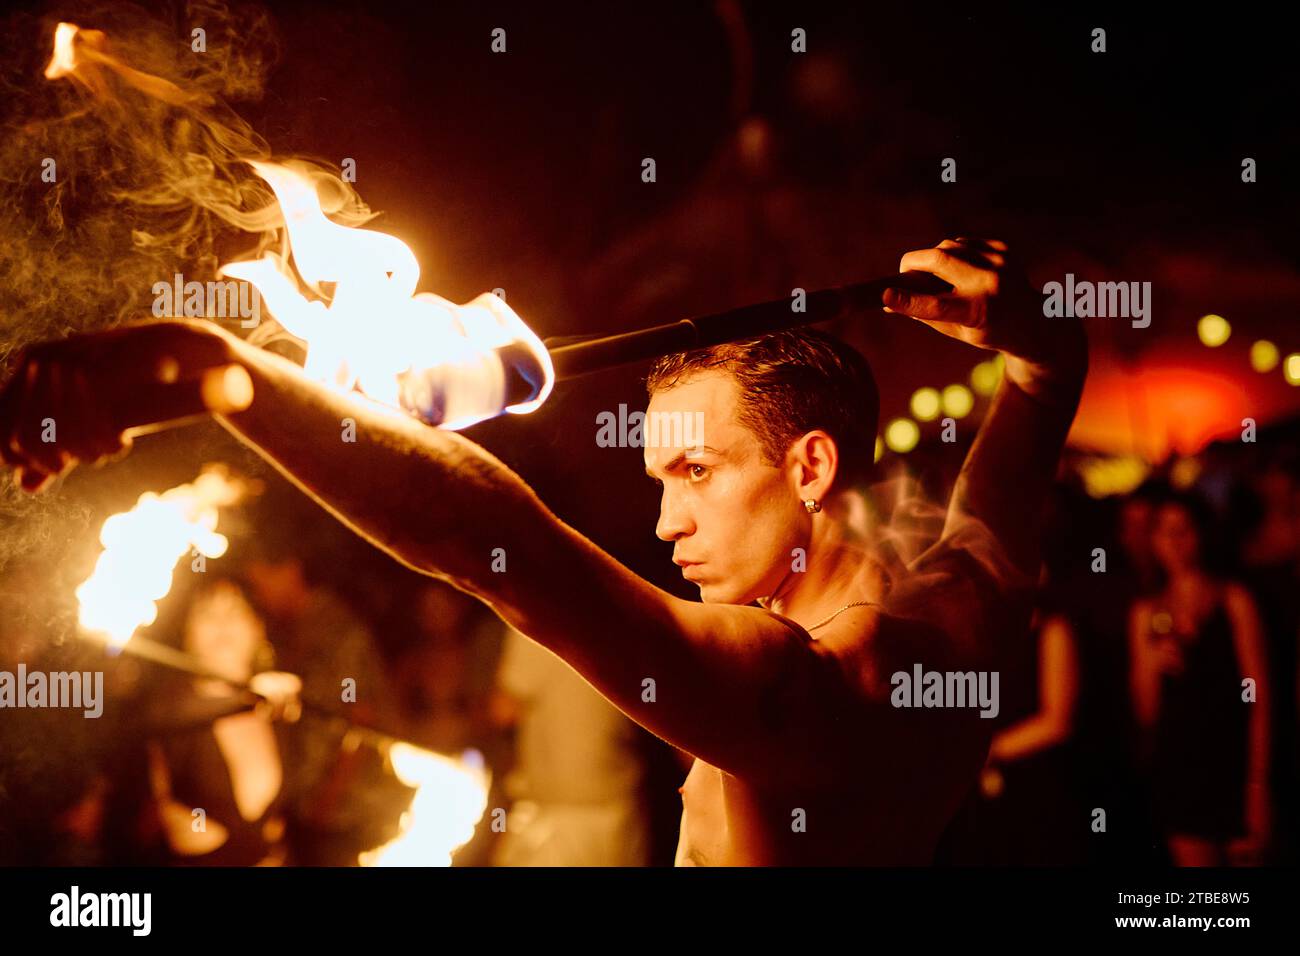 Künstler führen eine Feueraufführung vor, in der dunklen Nacht und vor einem Publikum, das aufmerksam zusieht. Stockfoto